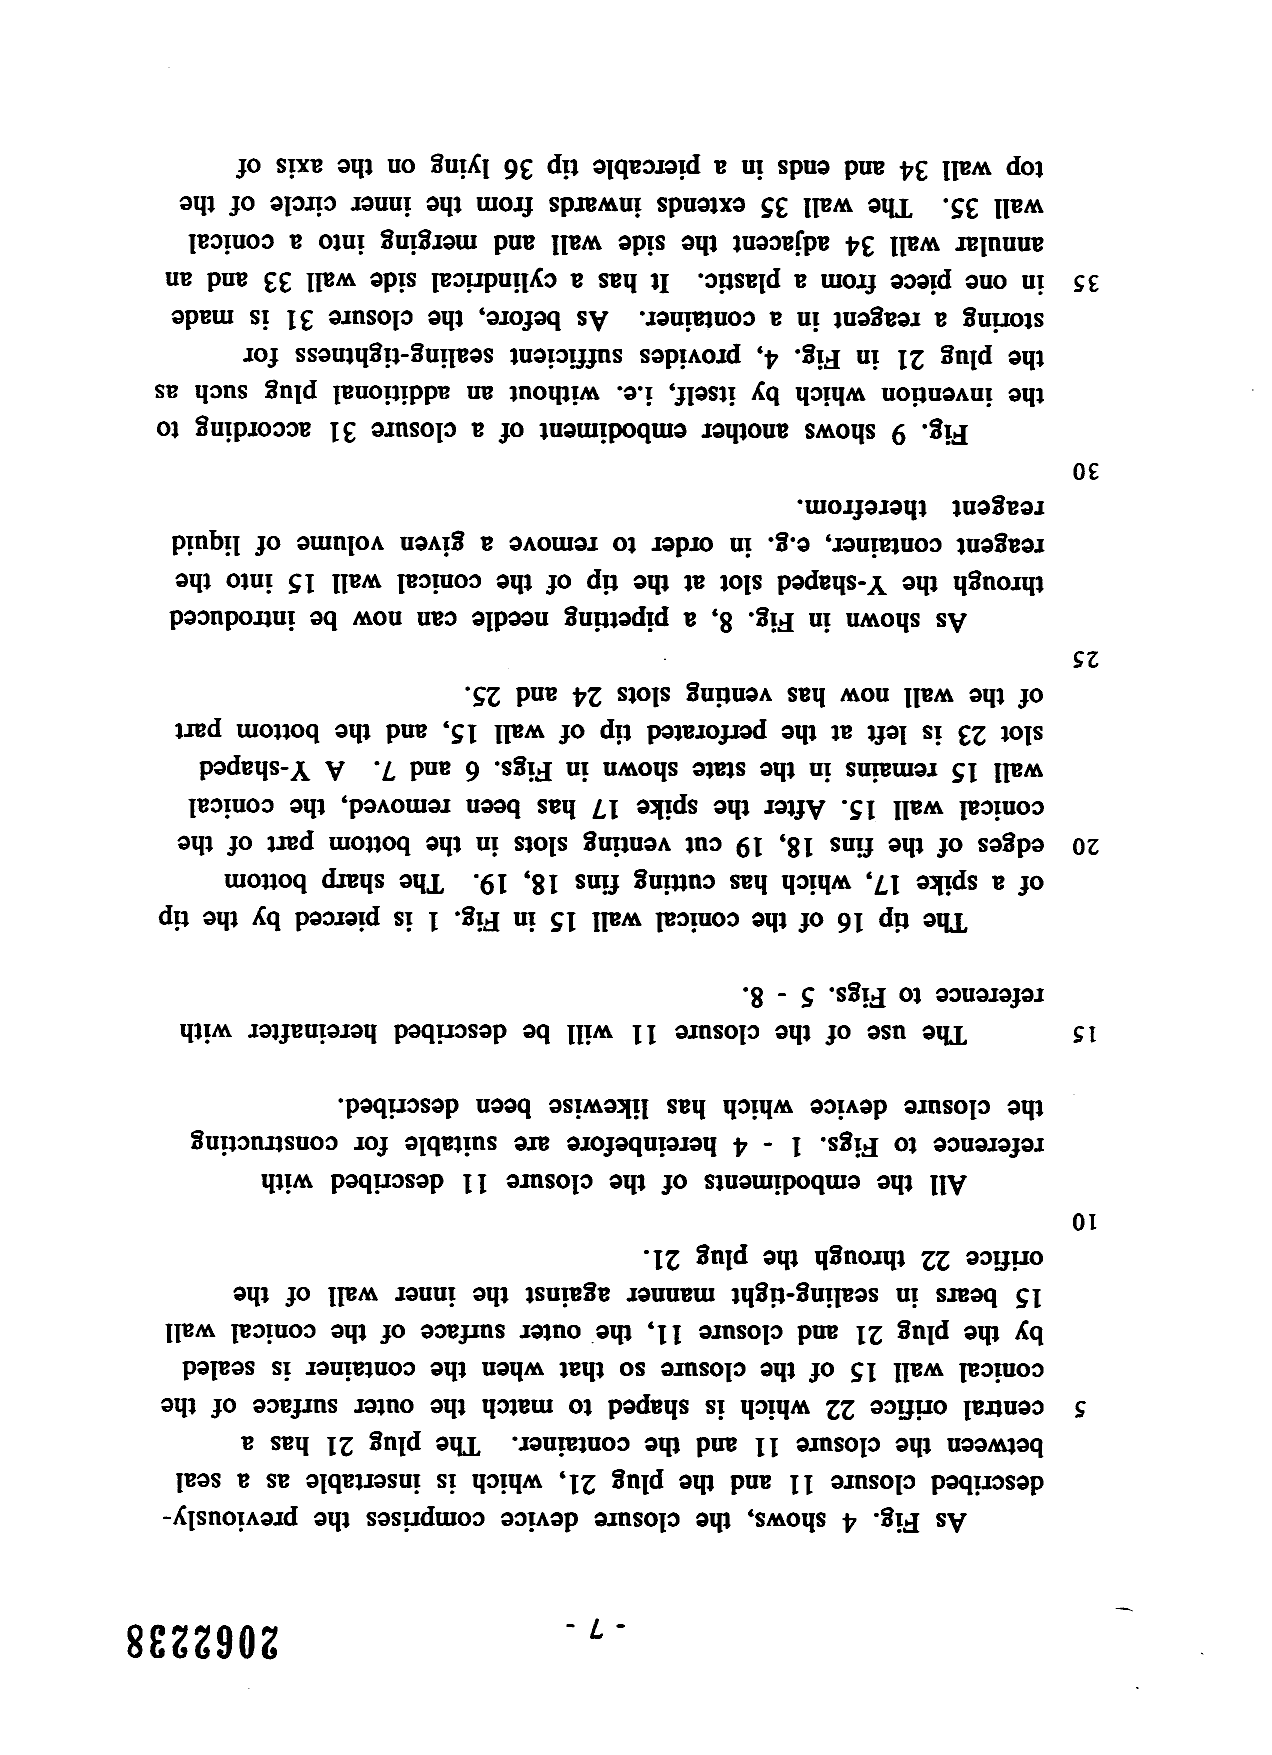 Canadian Patent Document 2062238. Description 19951225. Image 8 of 9